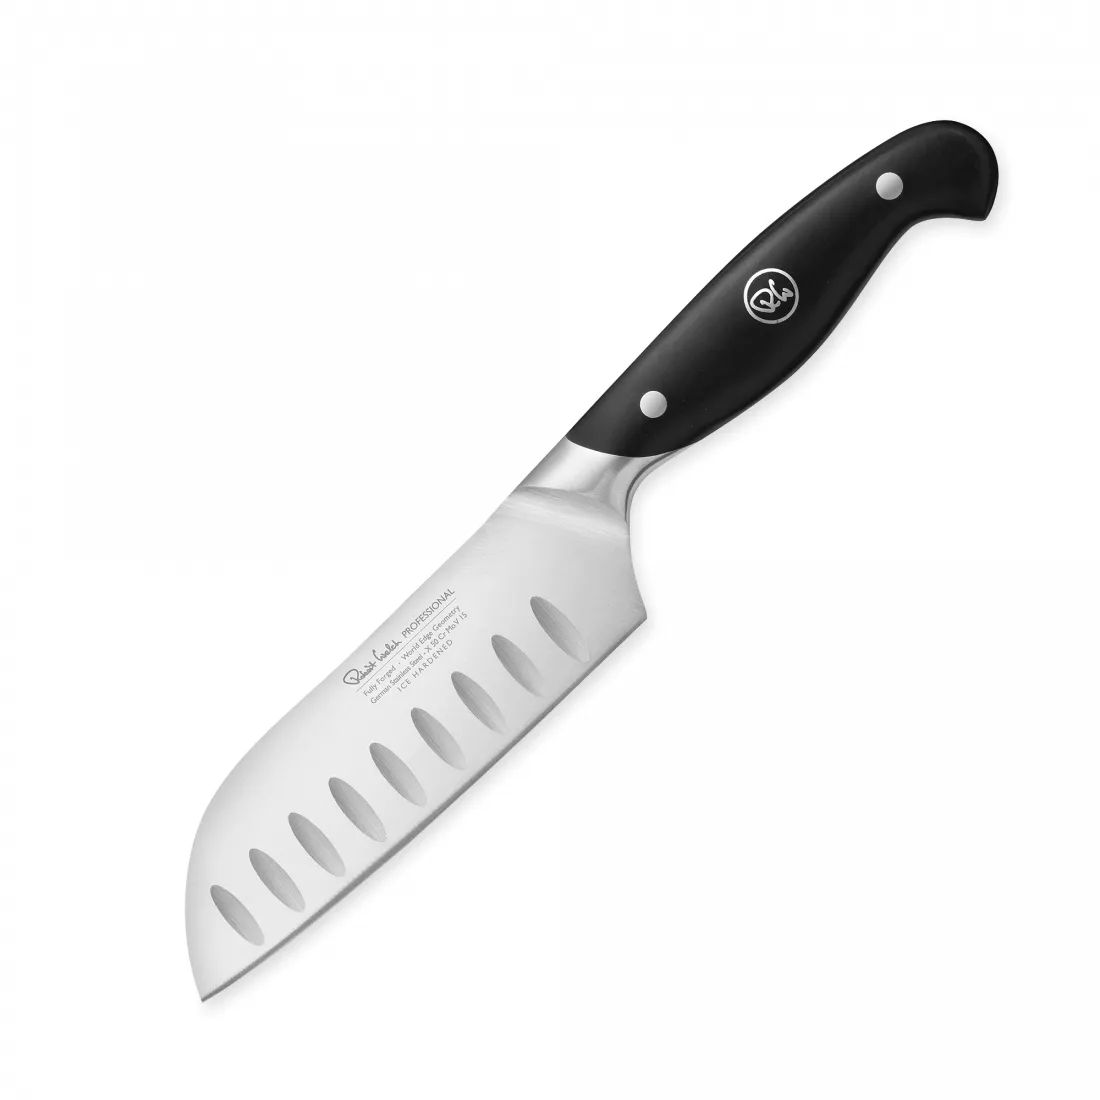 Нож поварской Сантоку Professional, длина лезвия 14 см, кованая нержавеющая сталь, Robert Welch, Великобритания, RWPSA2068V